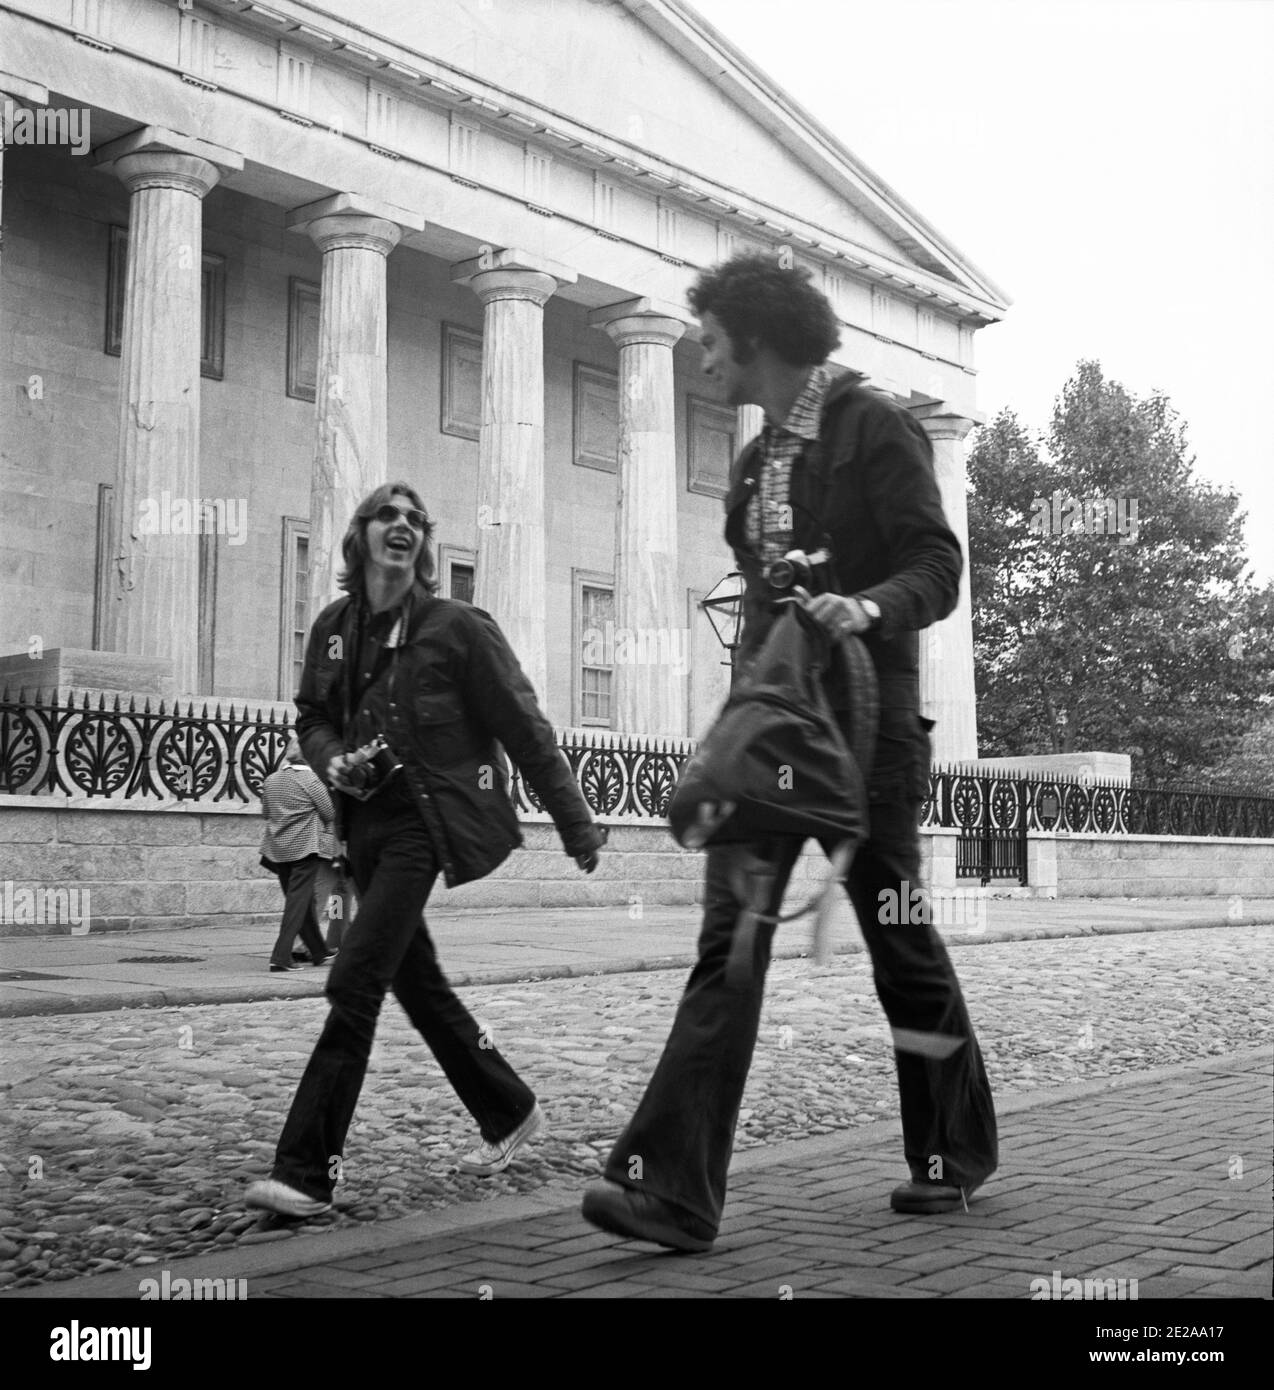 Jóvenes de buen humor caminando por la calle. Segundo Banco de los Estados Unidos. Filadelfia, EE.UU., 1976 Foto de stock